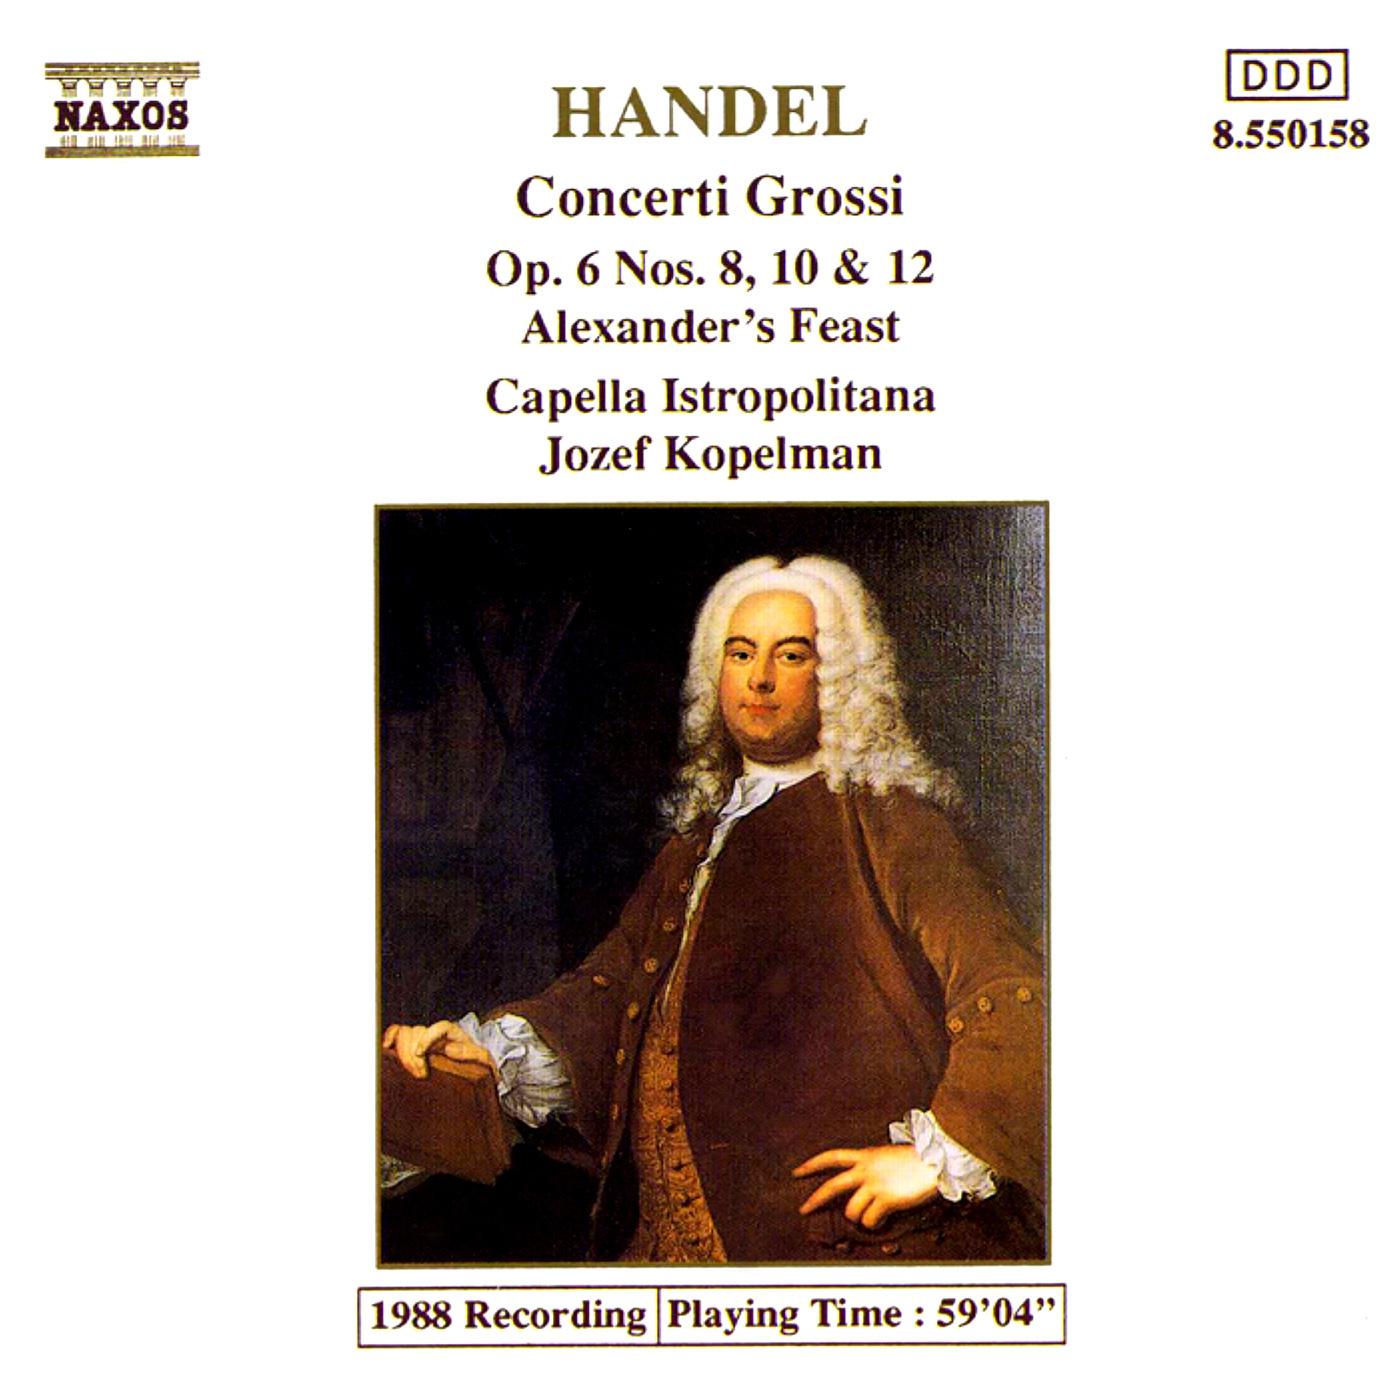 HANDEL: Concerti Grossi Op. 6, Nos. 8, 10 and 12